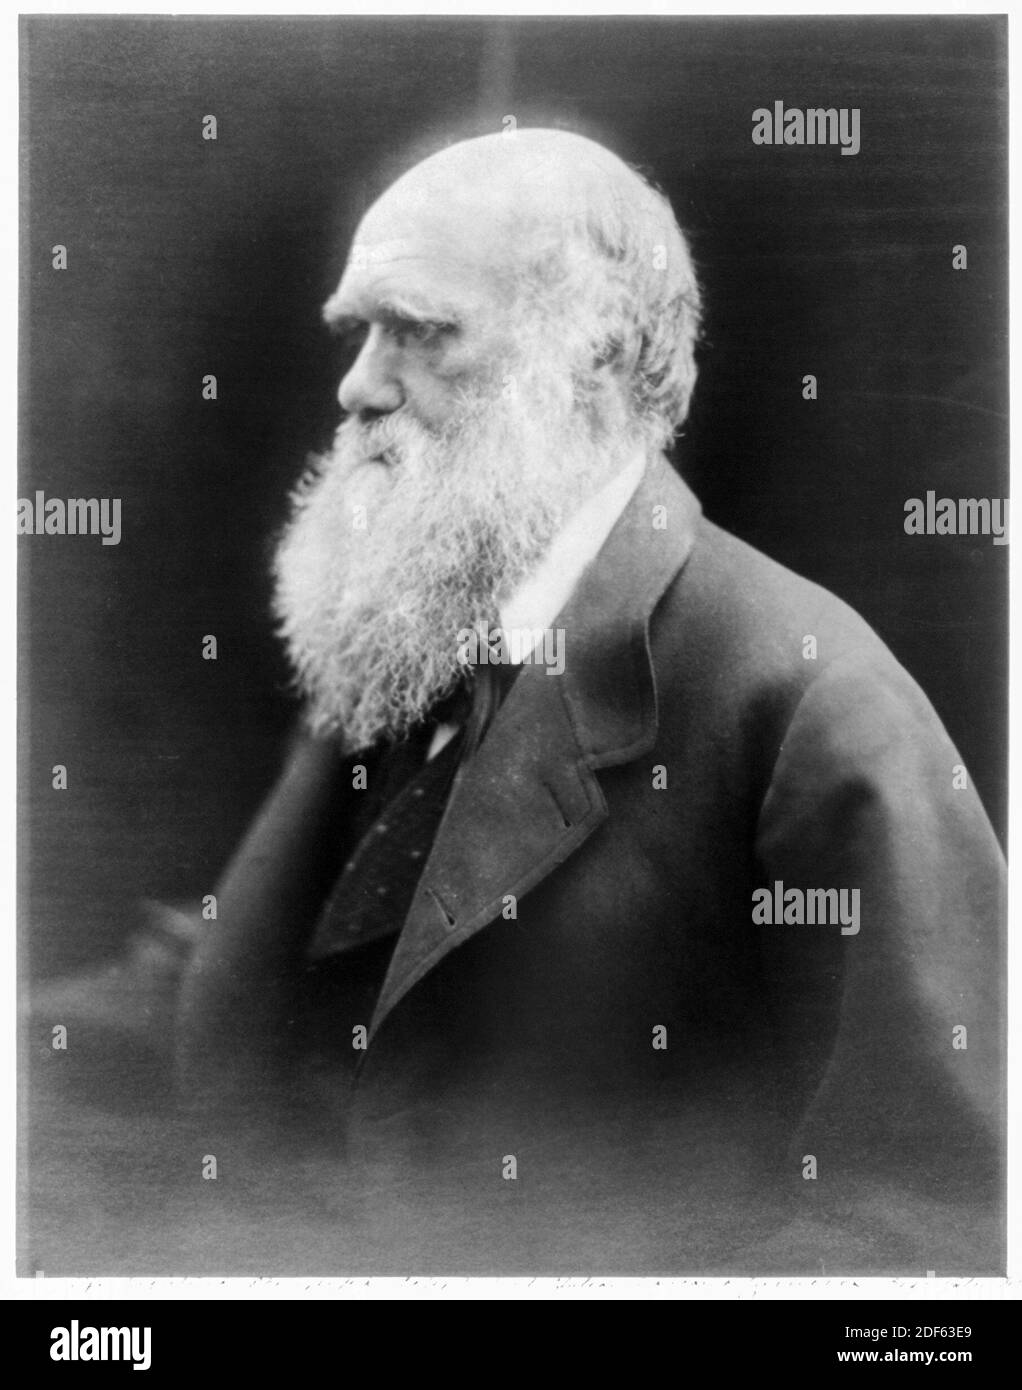 Charles Darwin (1809-1882), englischer Naturforscher, Geologe und Biologe, Portraitaufnahme von Julia Margaret Cameron, um 1870 Stockfoto